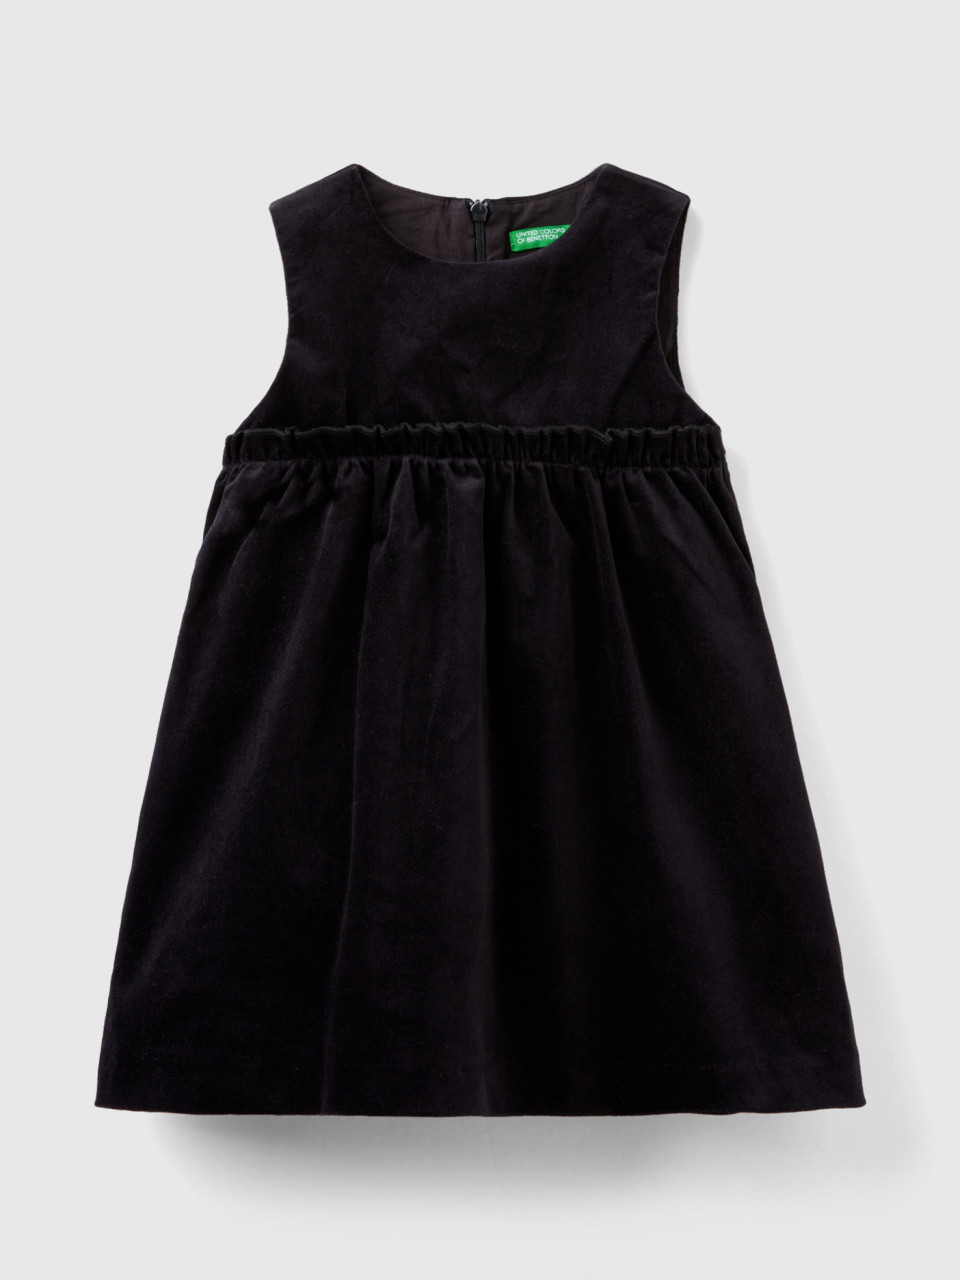 Benetton, Smooth Velvet Dress, Black, Kids